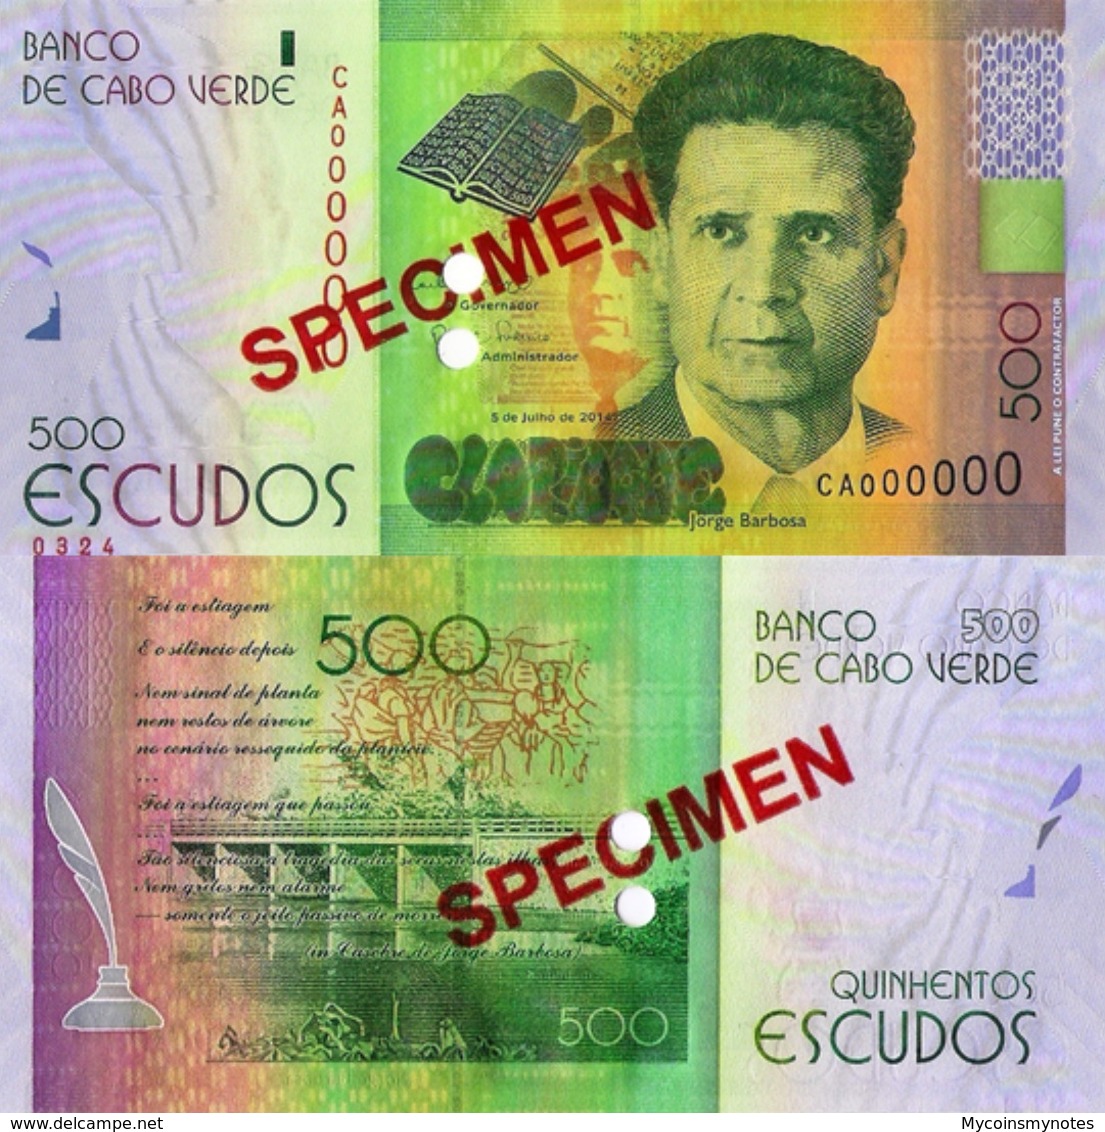 CAPE VERDE 500 "SPECIMEN" ESCUDOS FROM 2014, P72s, UNC - Specimen